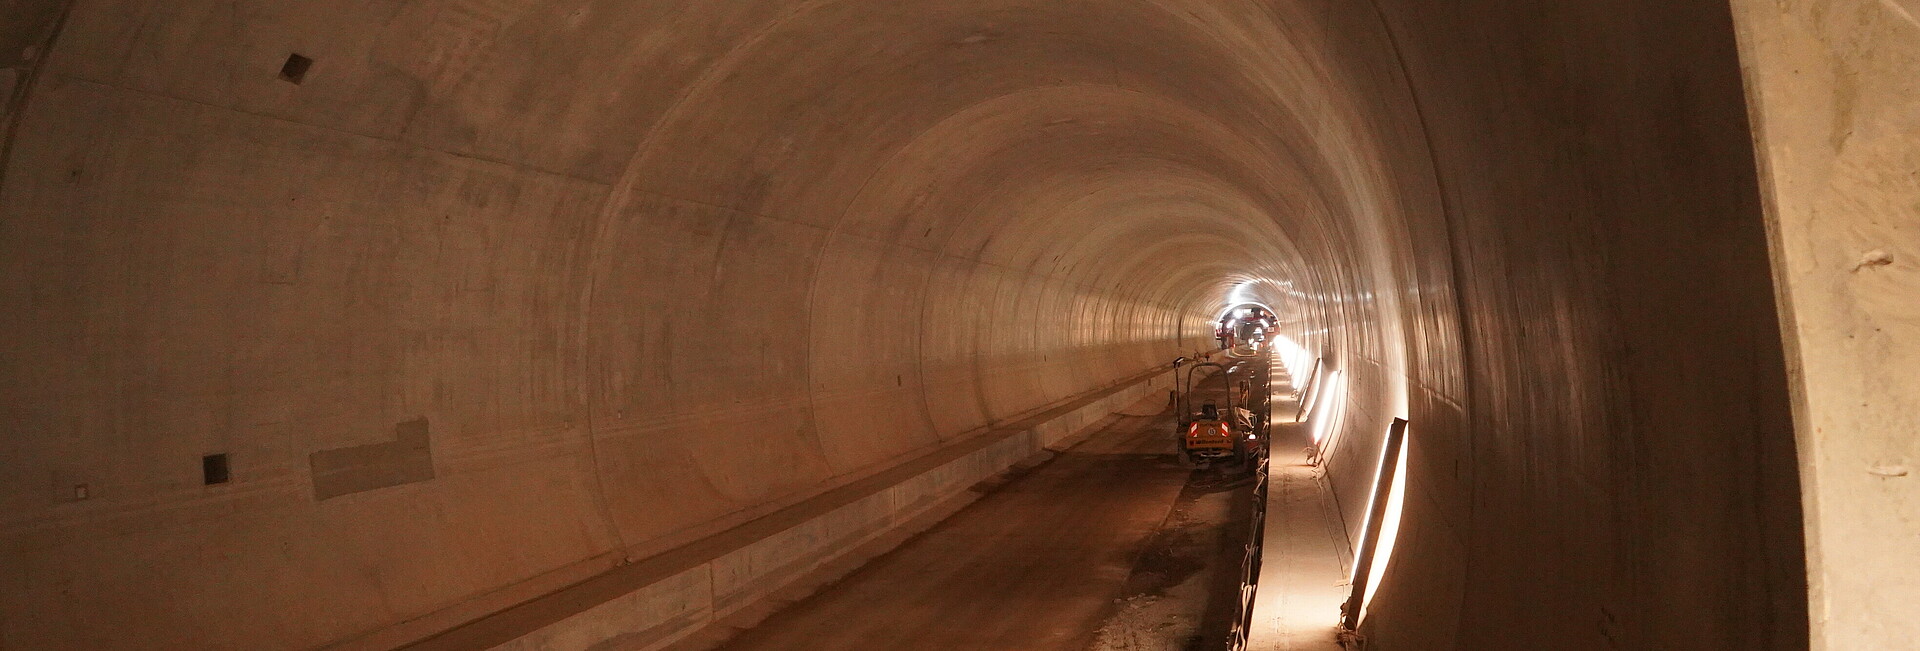 Tunnelröhre des Brandbergtunnels im Bau